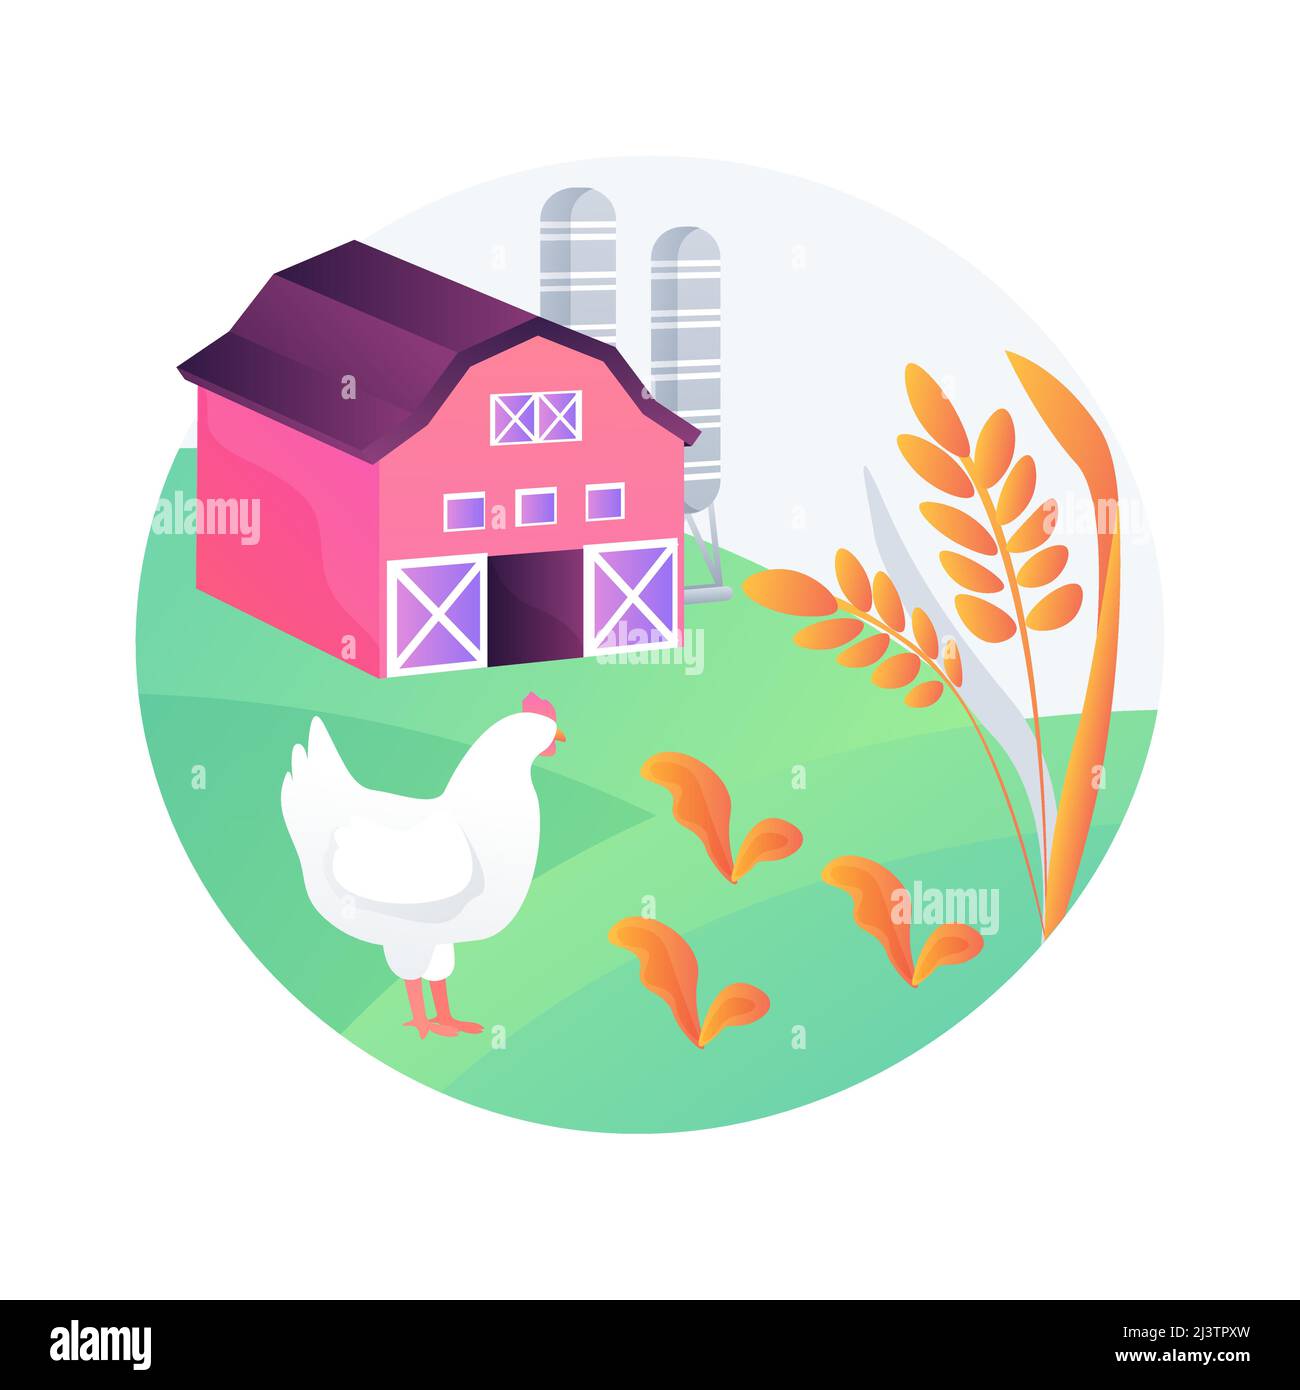 Nachhaltige Landwirtschaft abstrakte Konzept Vektor Illustration. Landwirtschaftsprozess, nachhaltige Ernährung, Ökologie orientiert wachsen, natürliche Ressourcen, s Stock Vektor